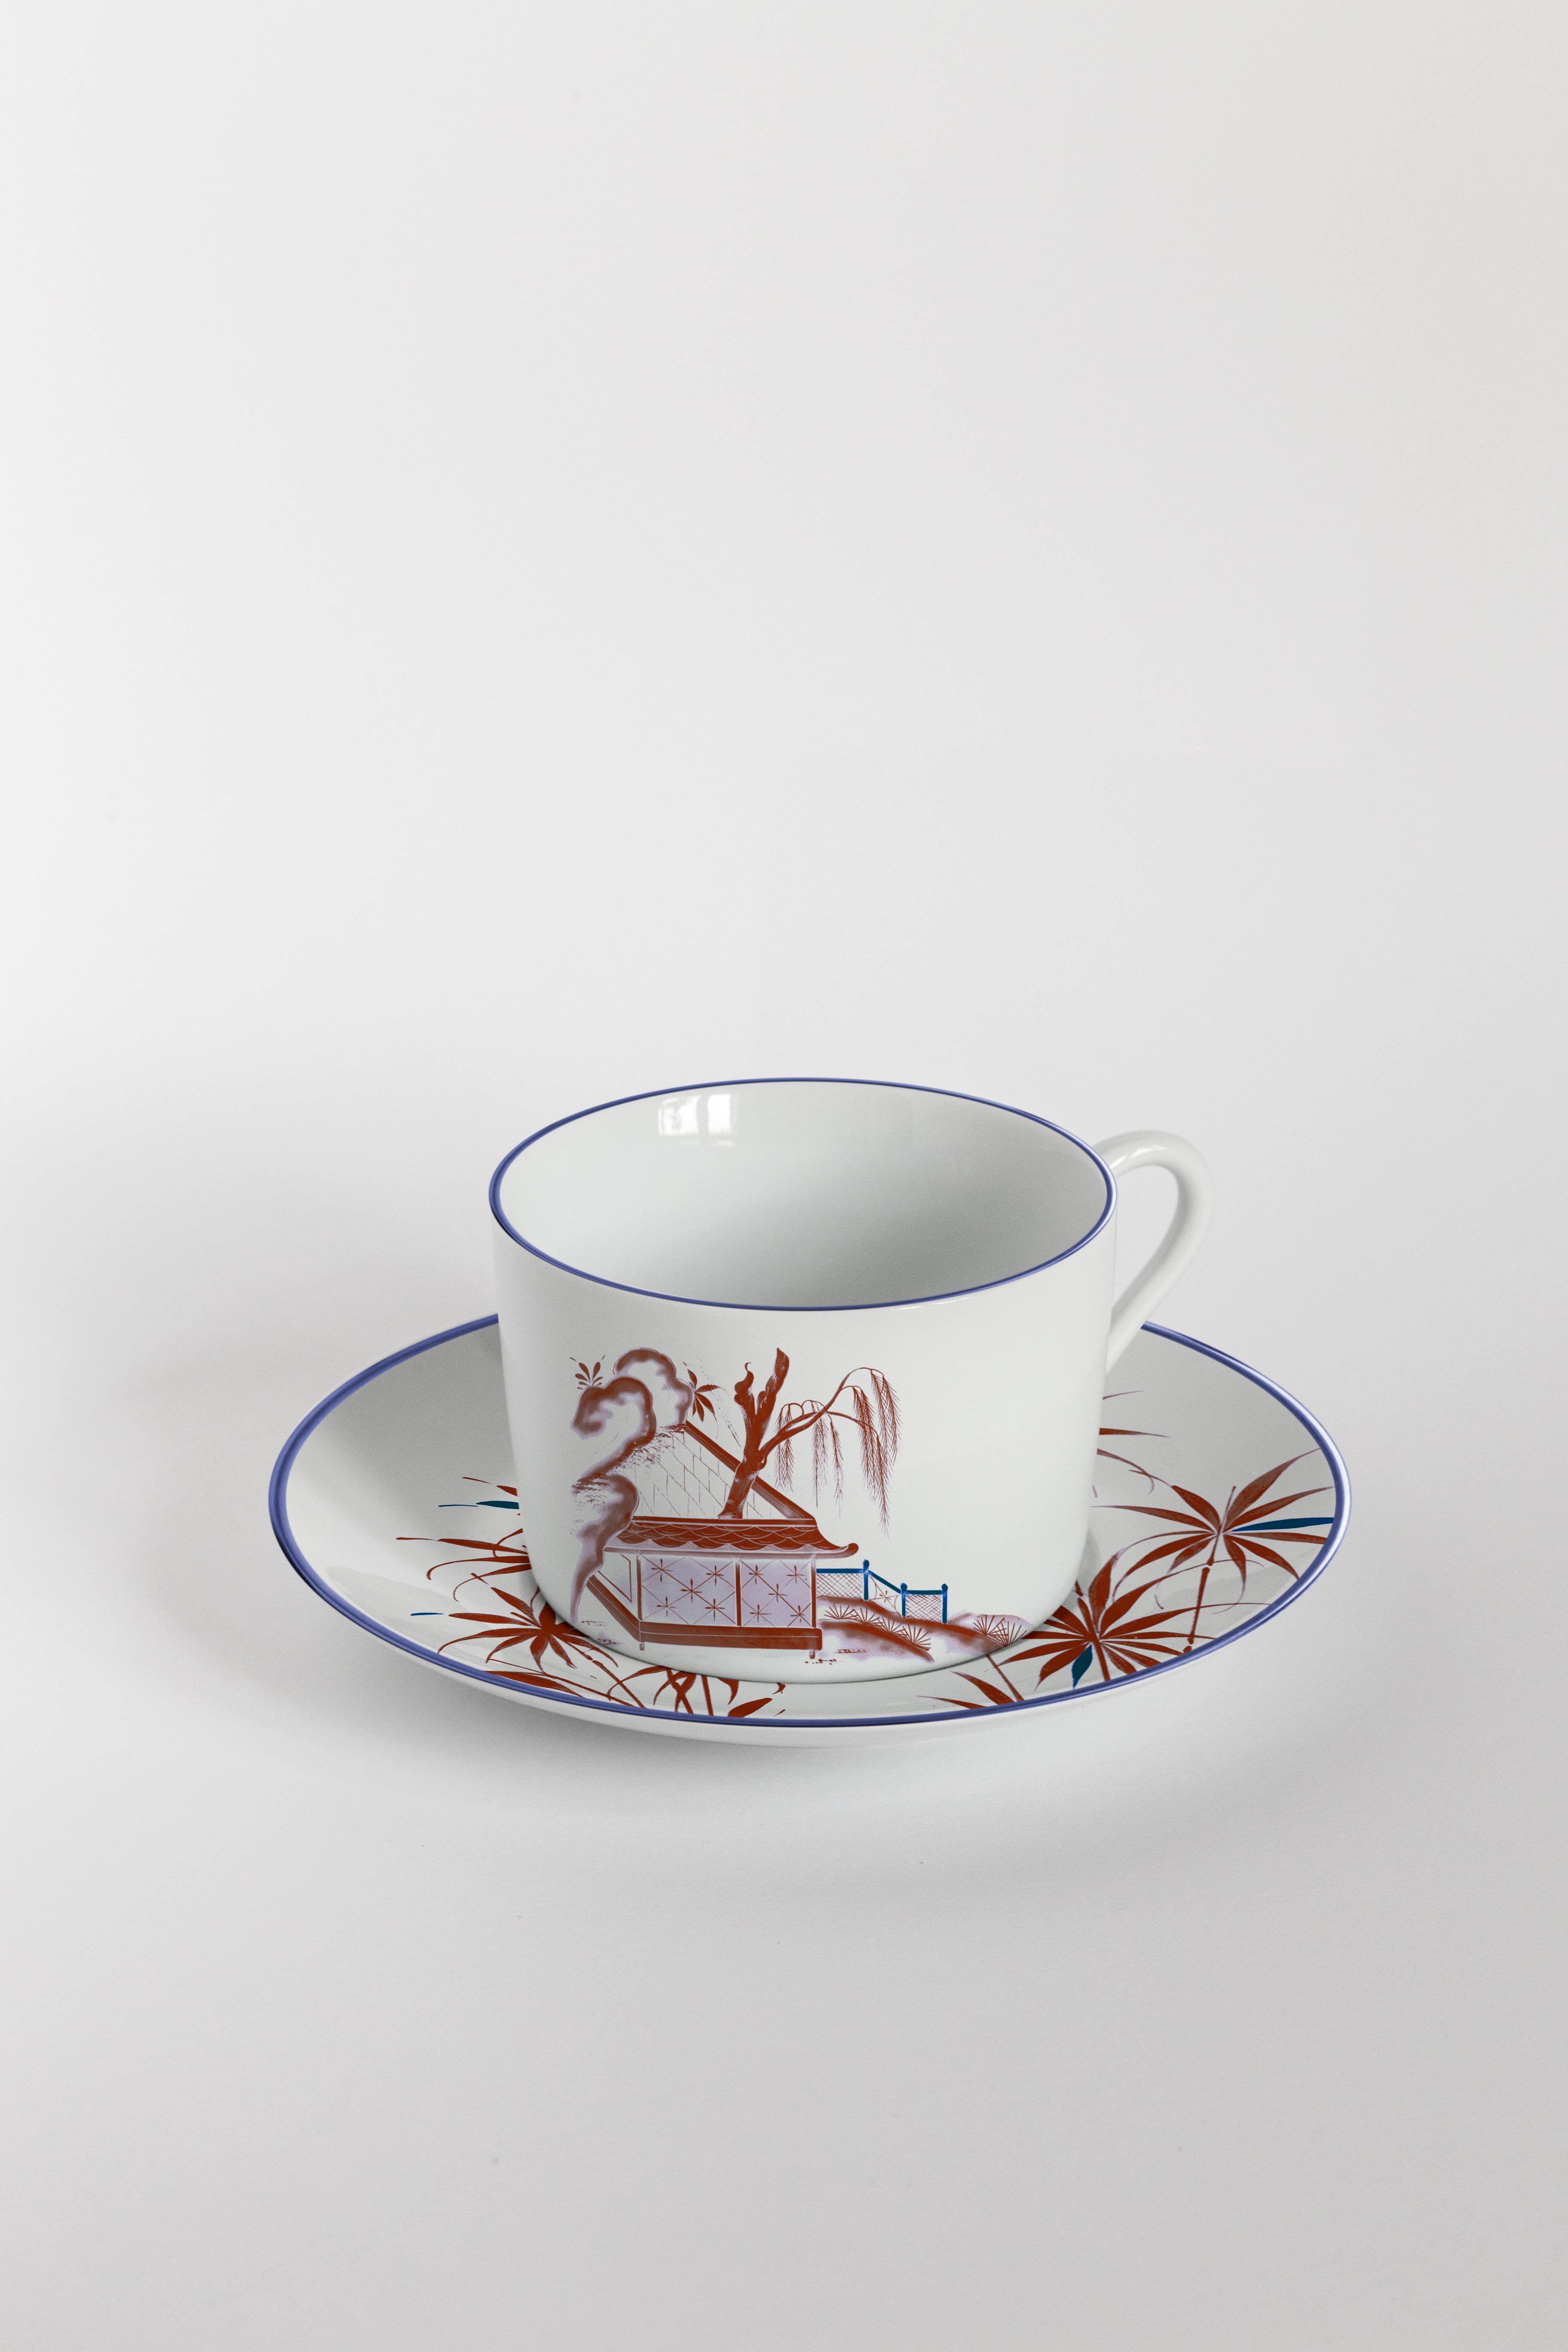 Le bordeaux et le bleu sont les couleurs primaires de cette collection d'assiettes inspirée du Japon, où des scènes japonaises anciennes se déroulent sur les rivières d'un lac féerique.
Service à thé avec 6 tasses à café et assiettes.